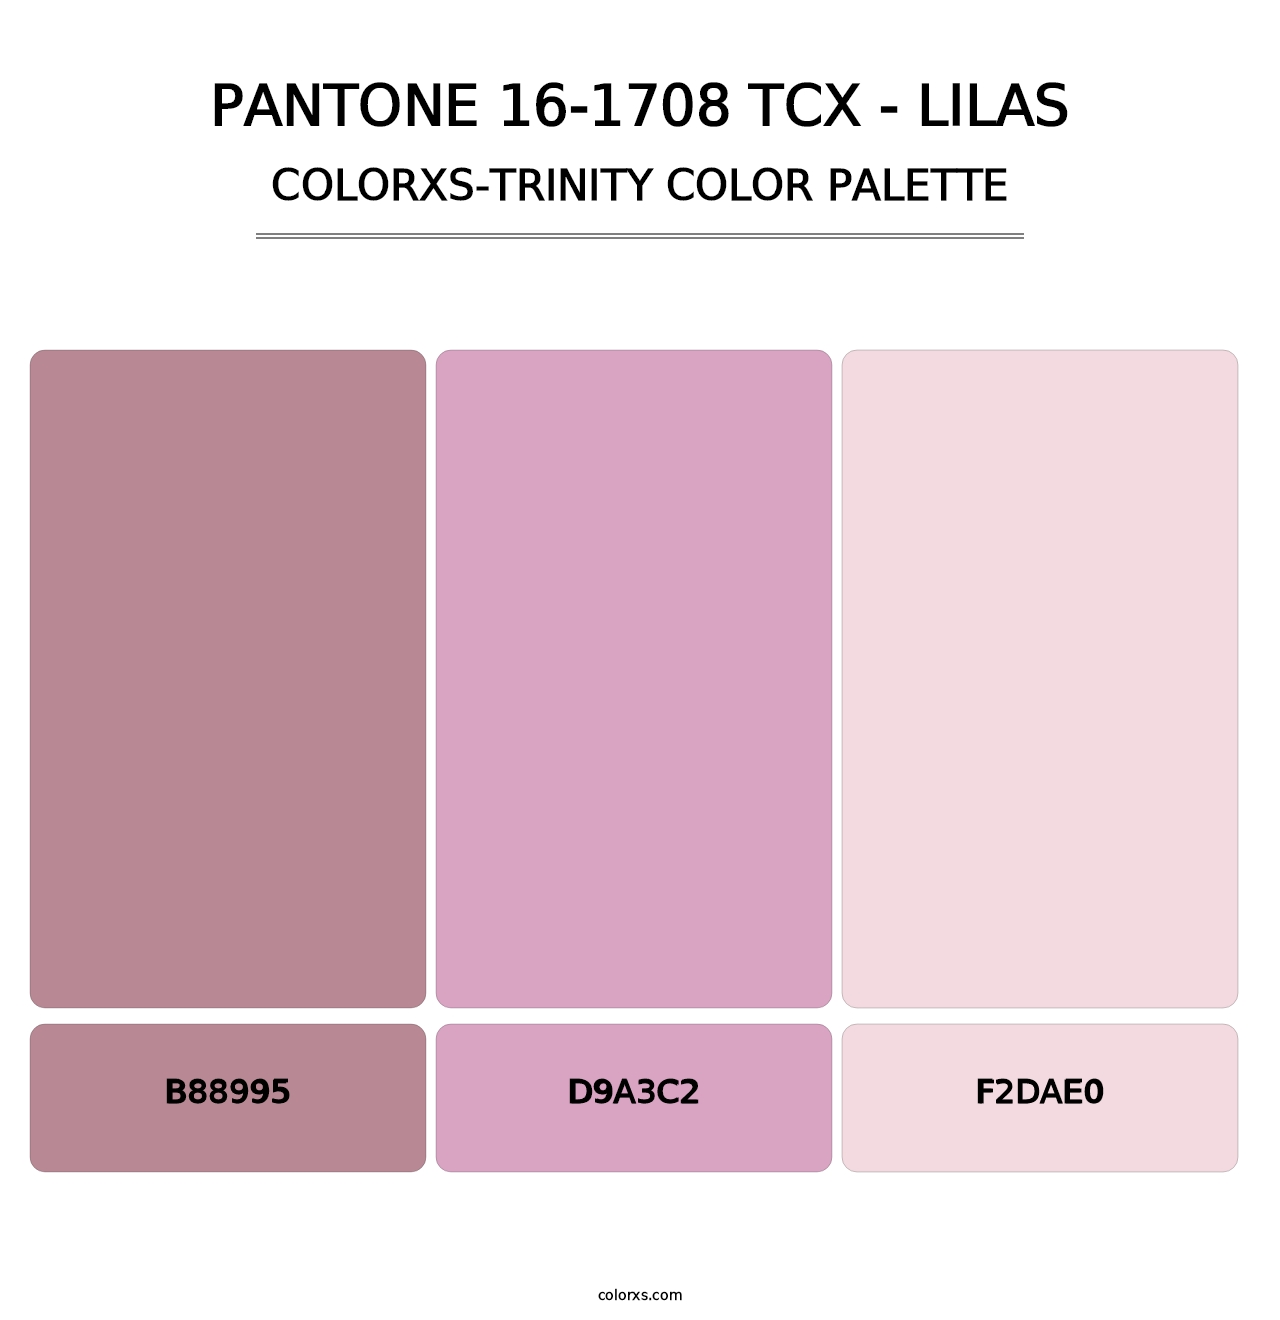 PANTONE 16-1708 TCX - Lilas - Colorxs Trinity Palette